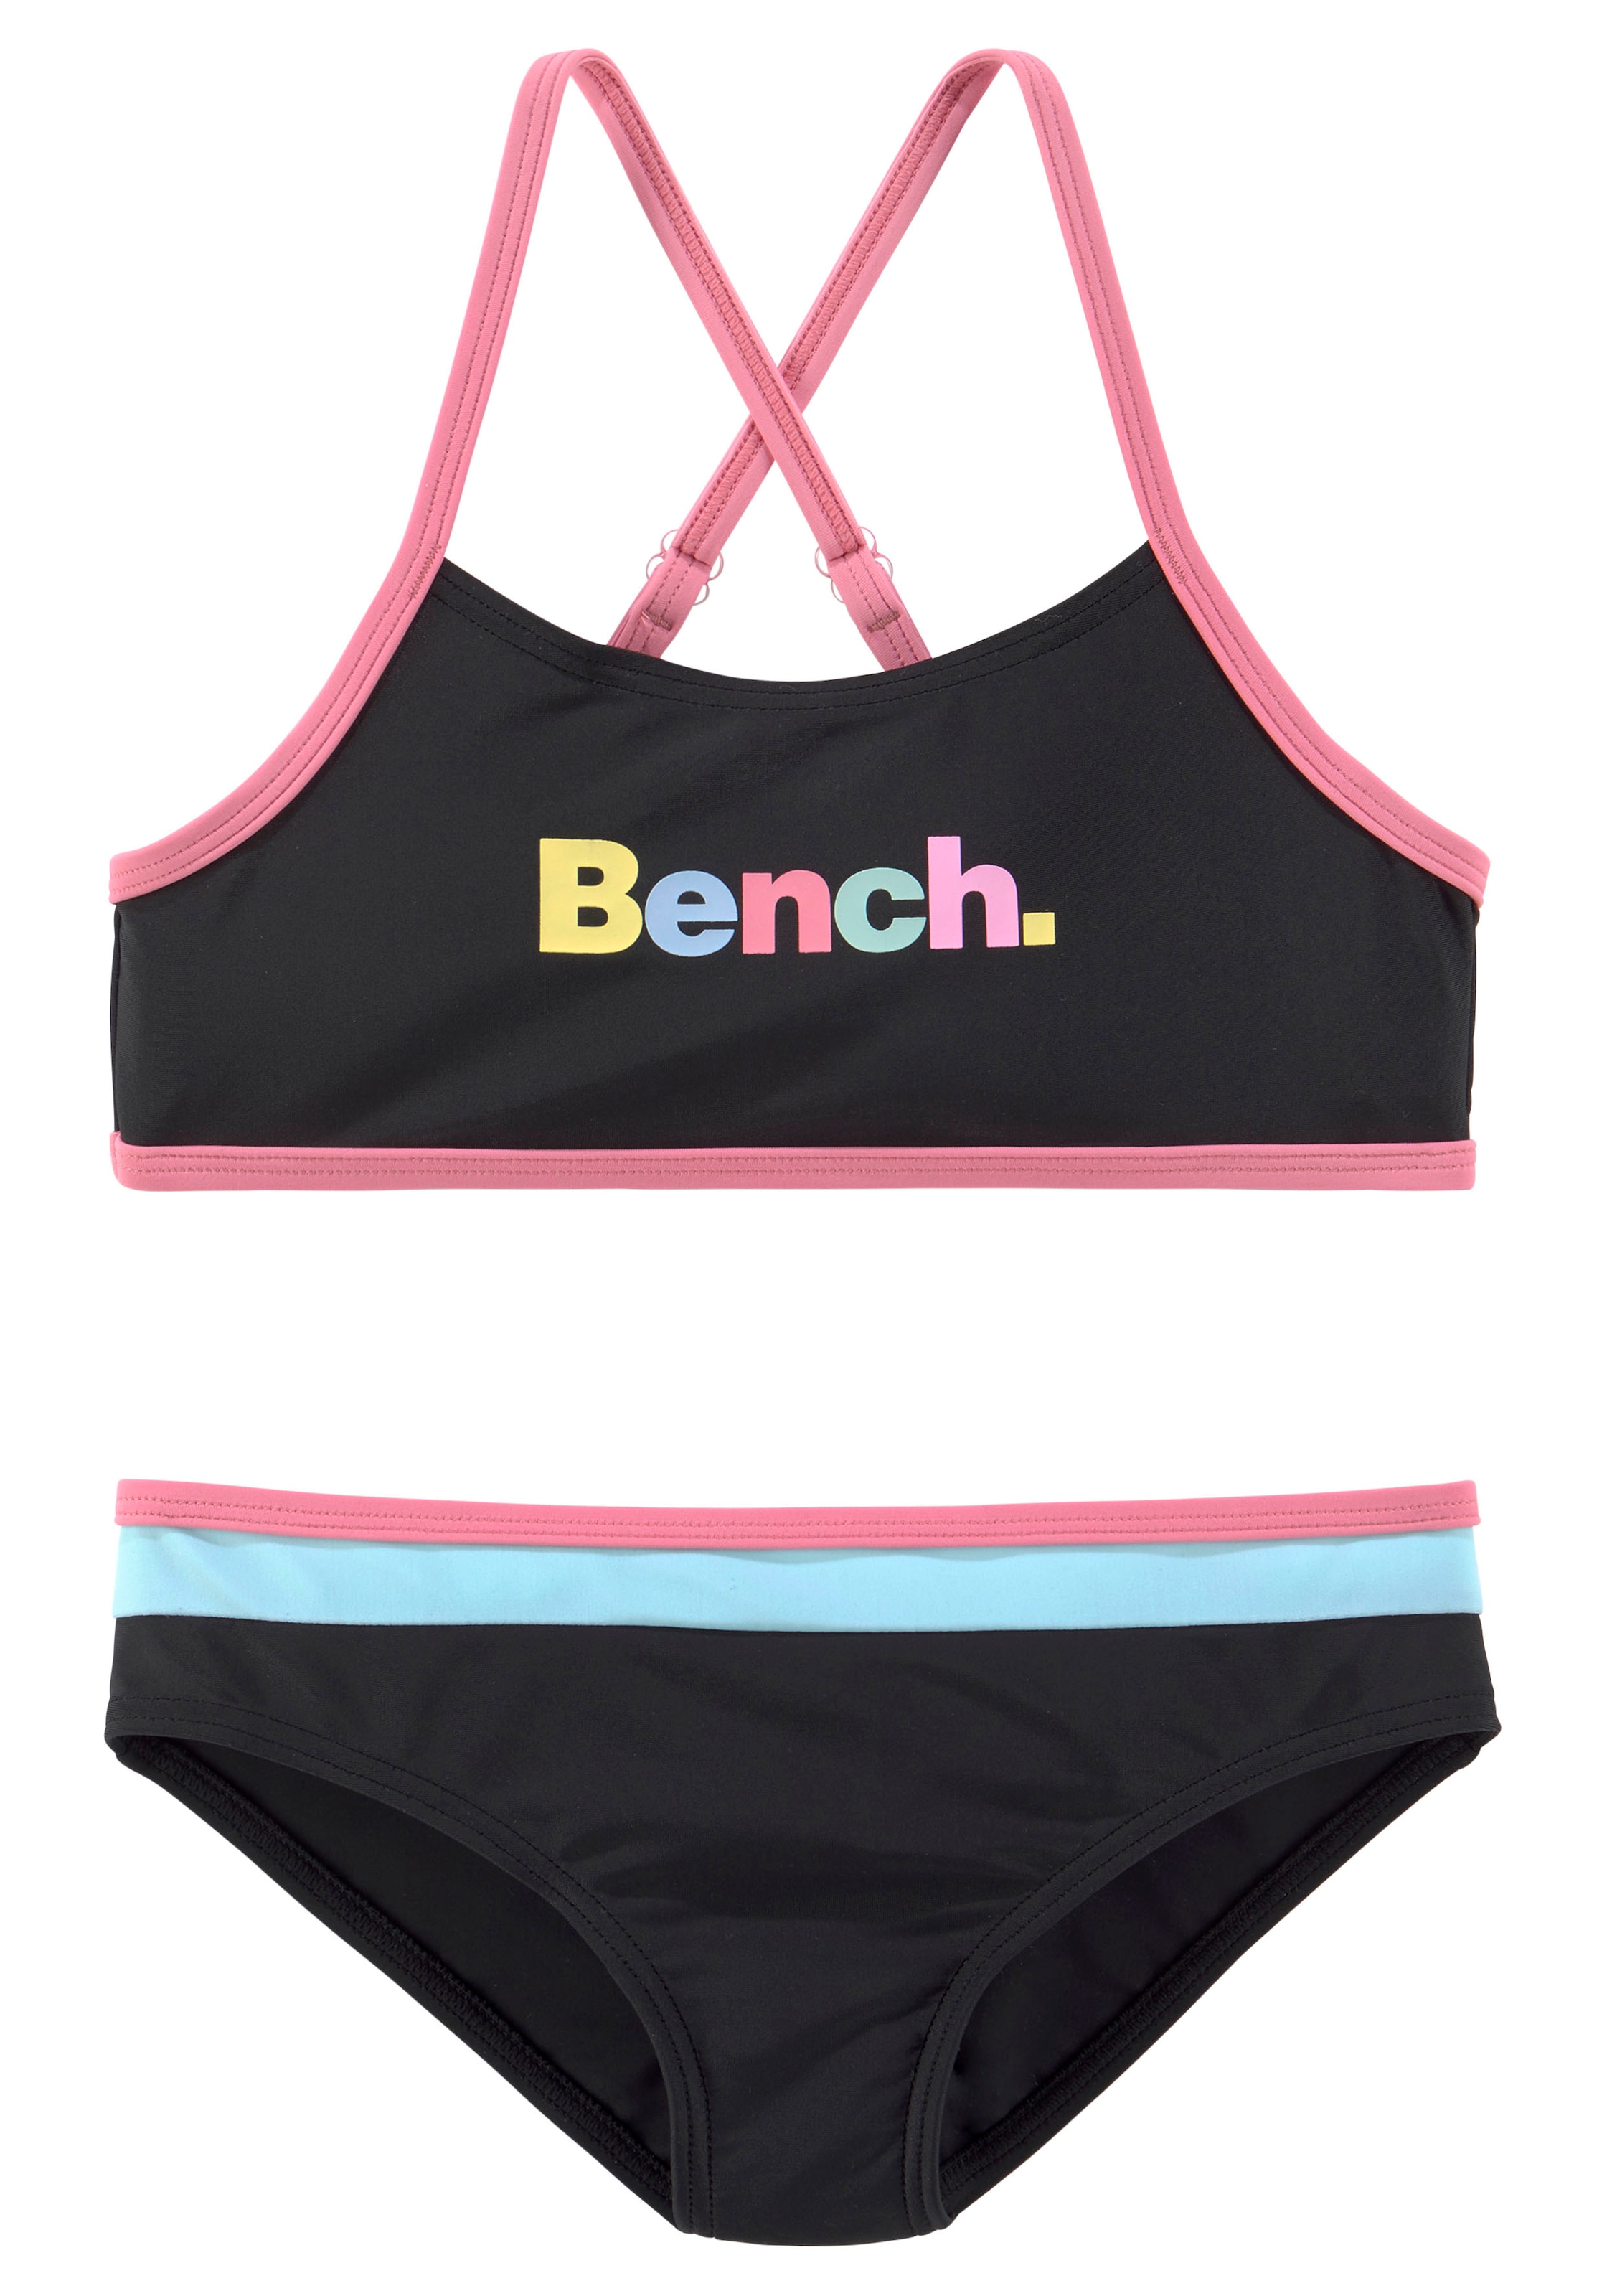 bestellen online Bustier-Bikini, bunten mit Details Bench.